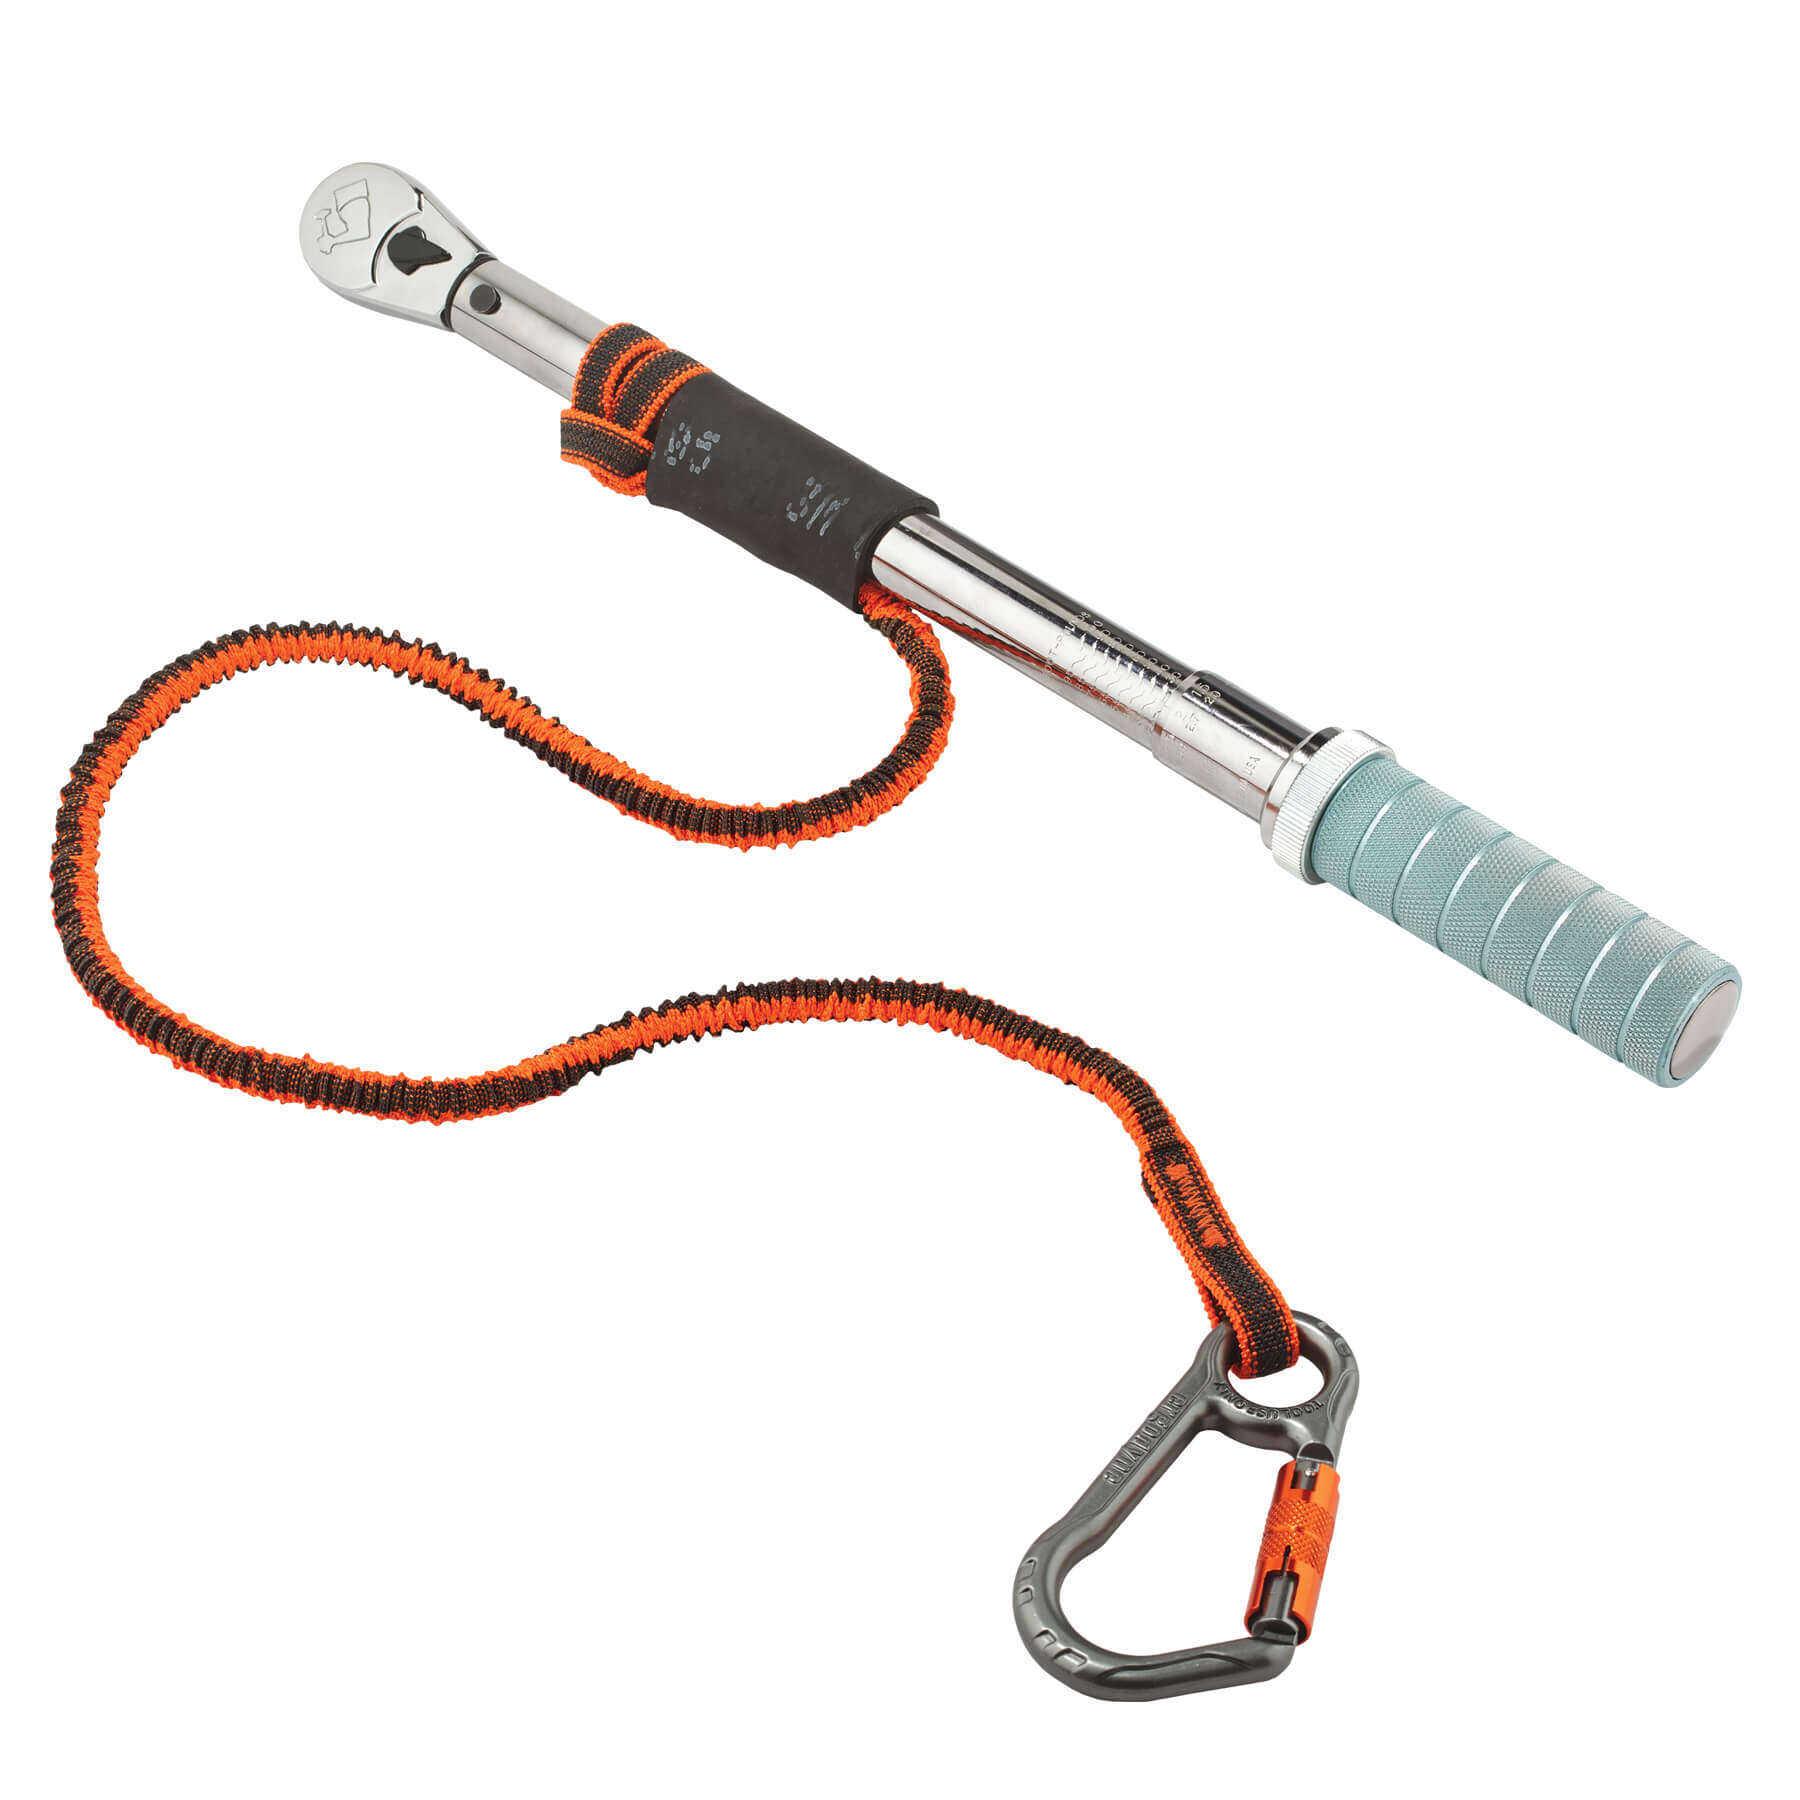 Squids® 3010 Retractable Tool Lanyard with Belt Loop Clip